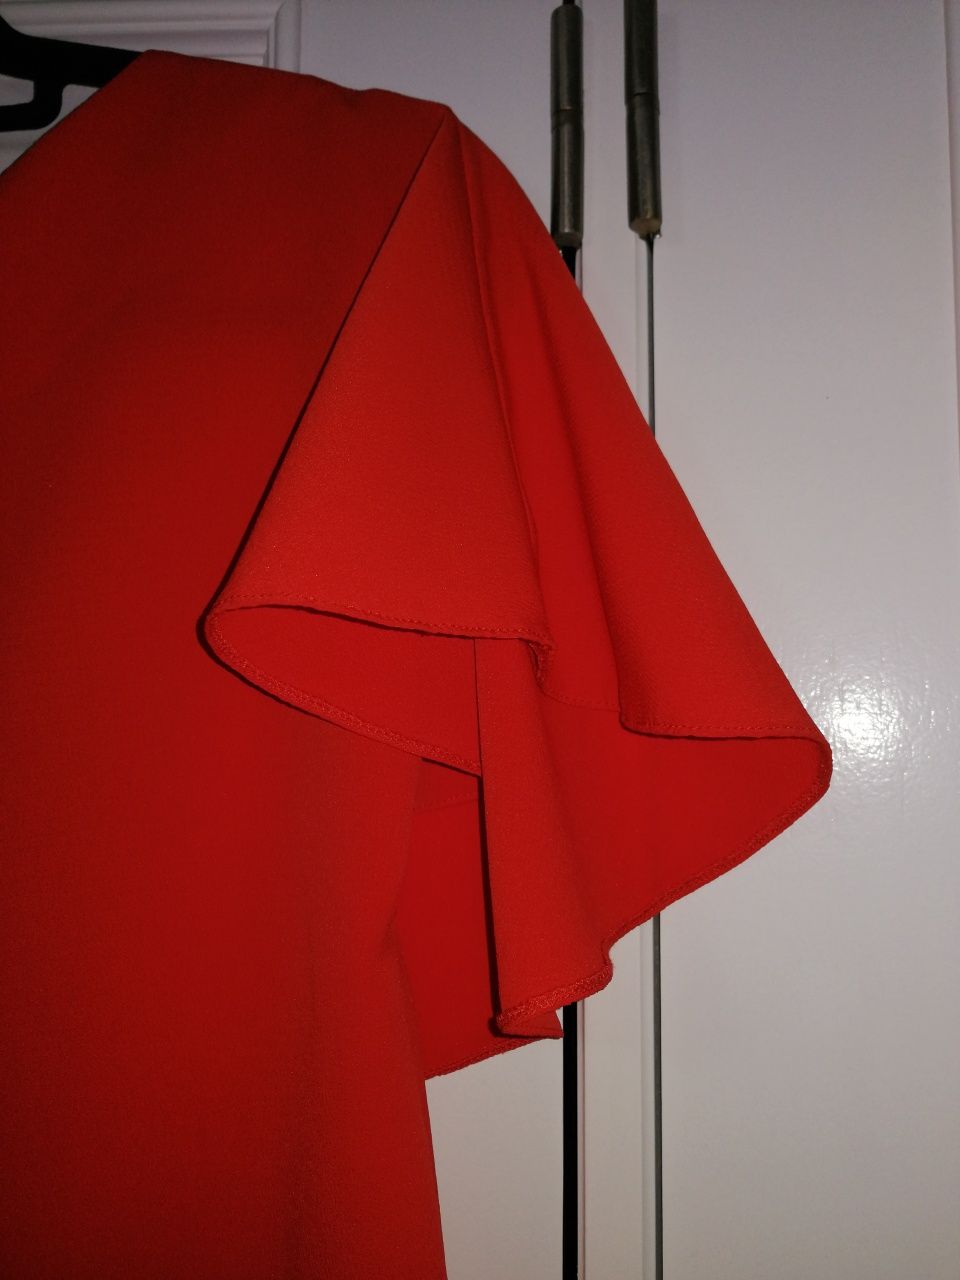 Vestido Vermelho Curto (M/L)